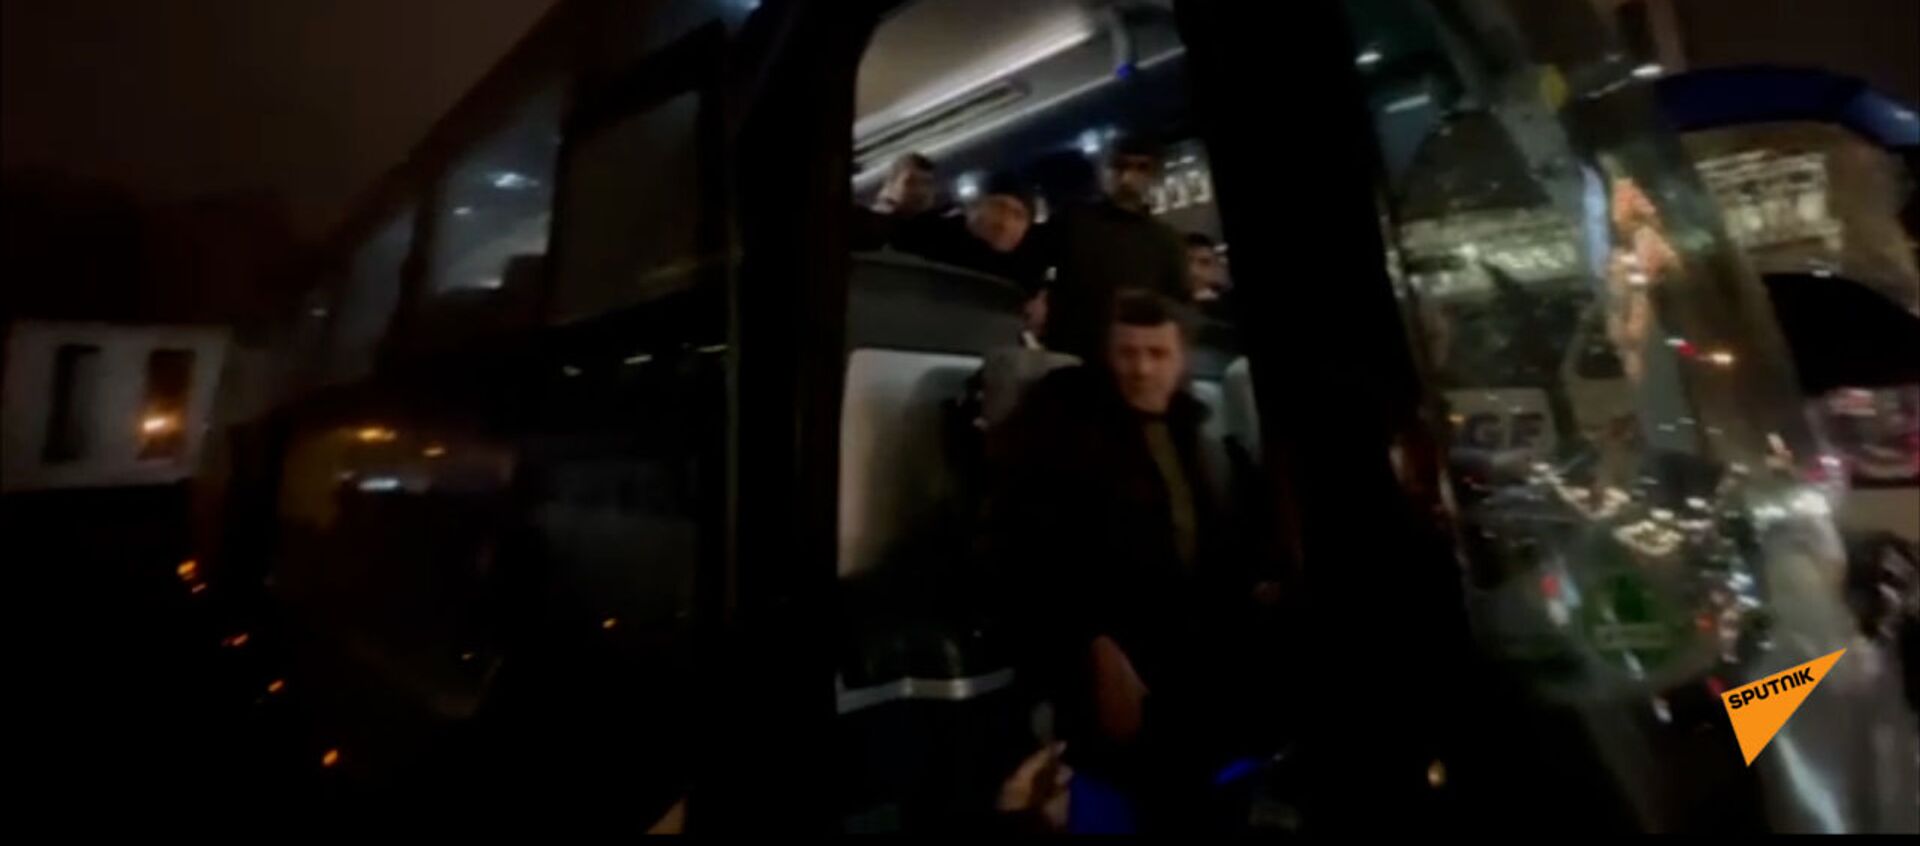 Ավտոբուսները Փաշինյանի հանրահավաքի մասնակիցներին տանում են տուն - Sputnik Армения, 1920, 01.03.2021